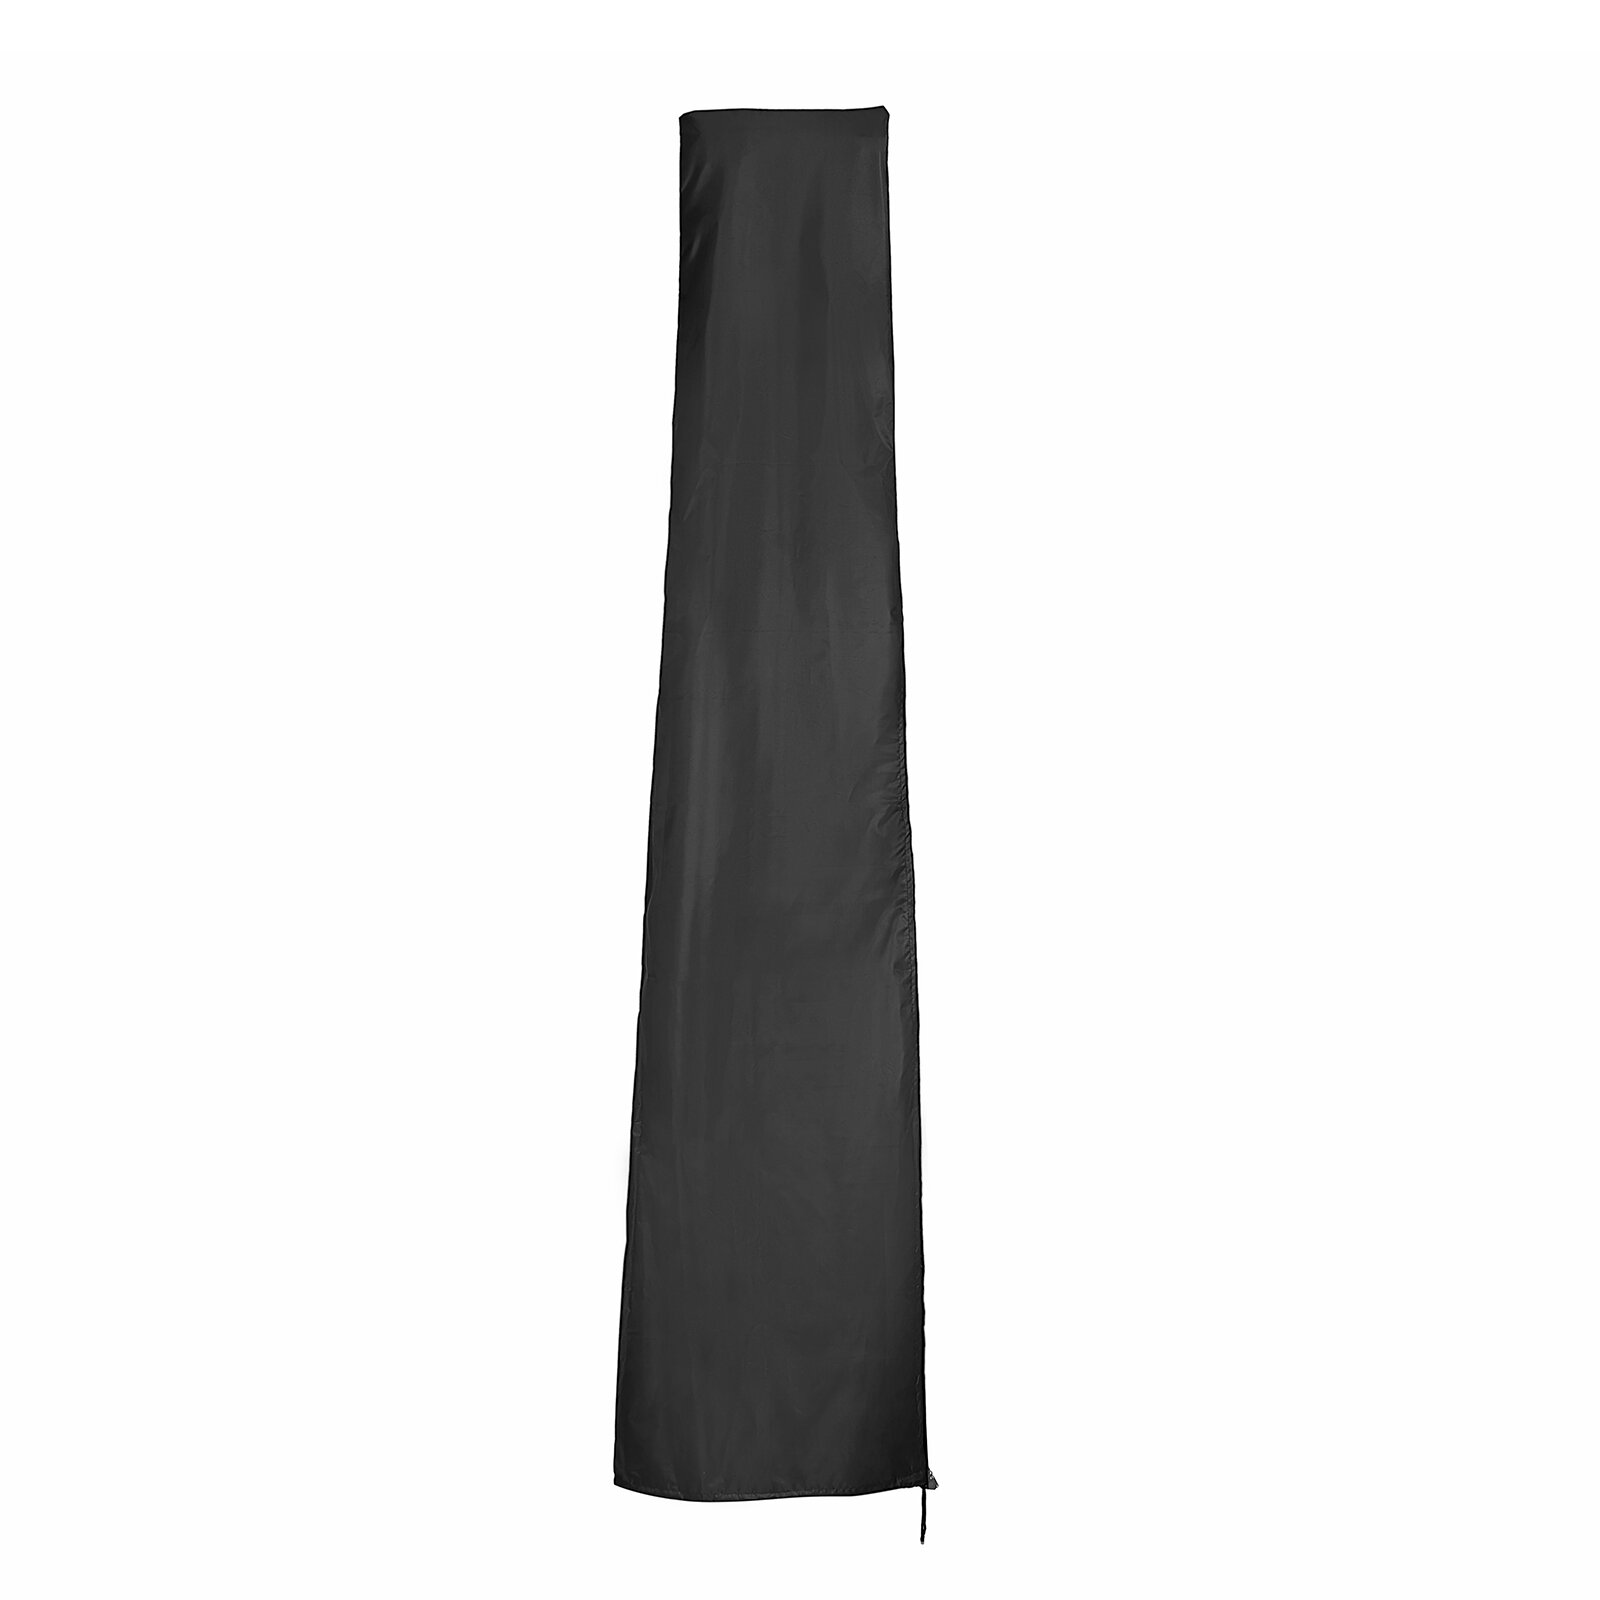 600D Nylon Oxford Cloth T Shaped Umbrella Cover Wind-resistant Anti-UV Umbrella Cover